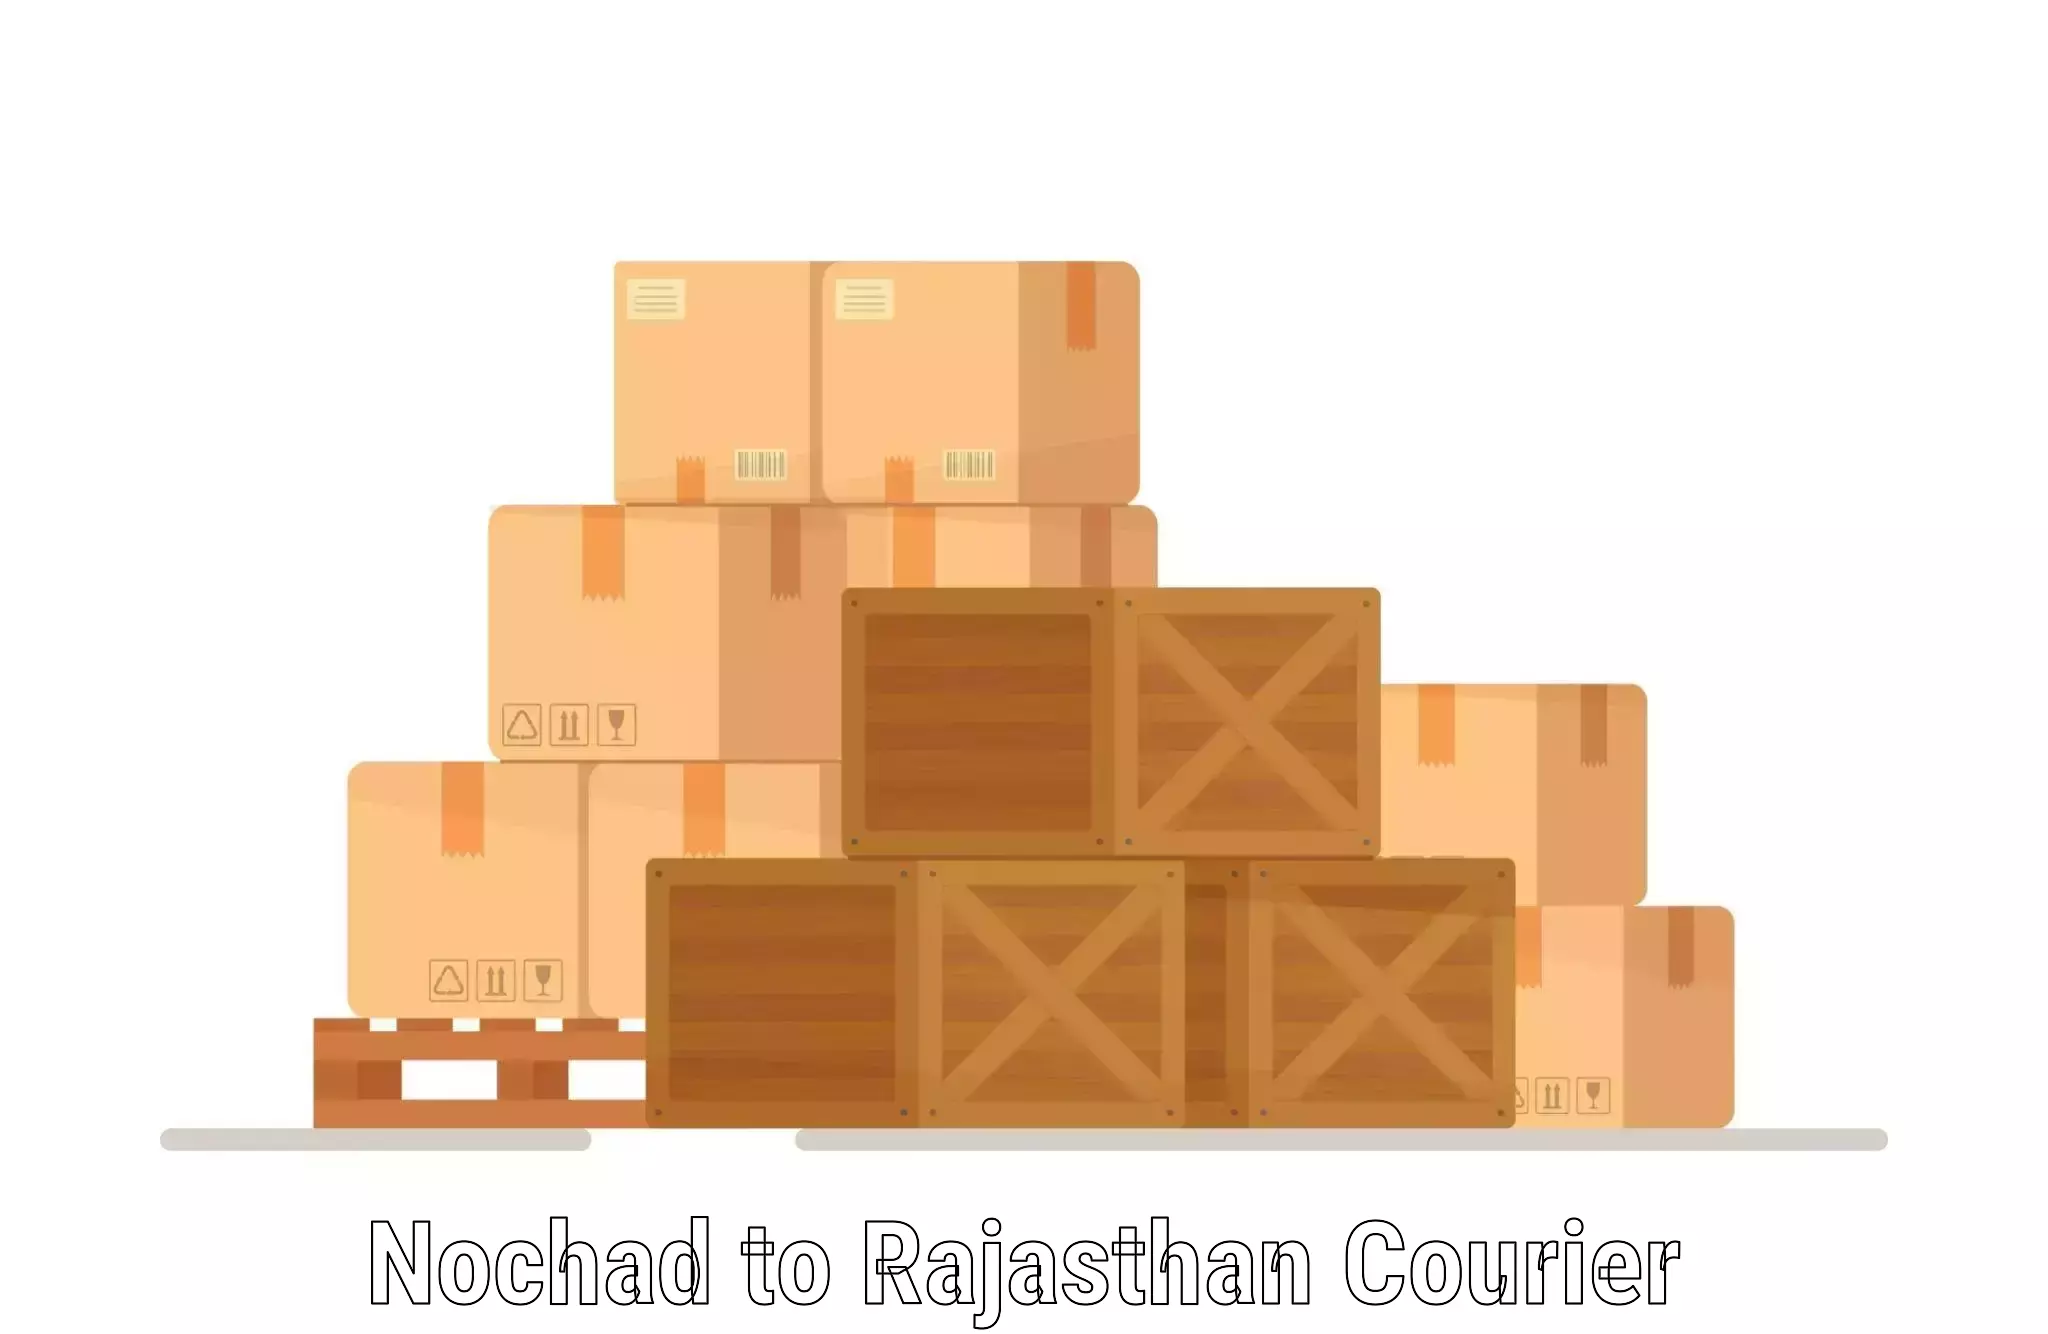 Dynamic courier operations Nochad to Sri Vijaynagar